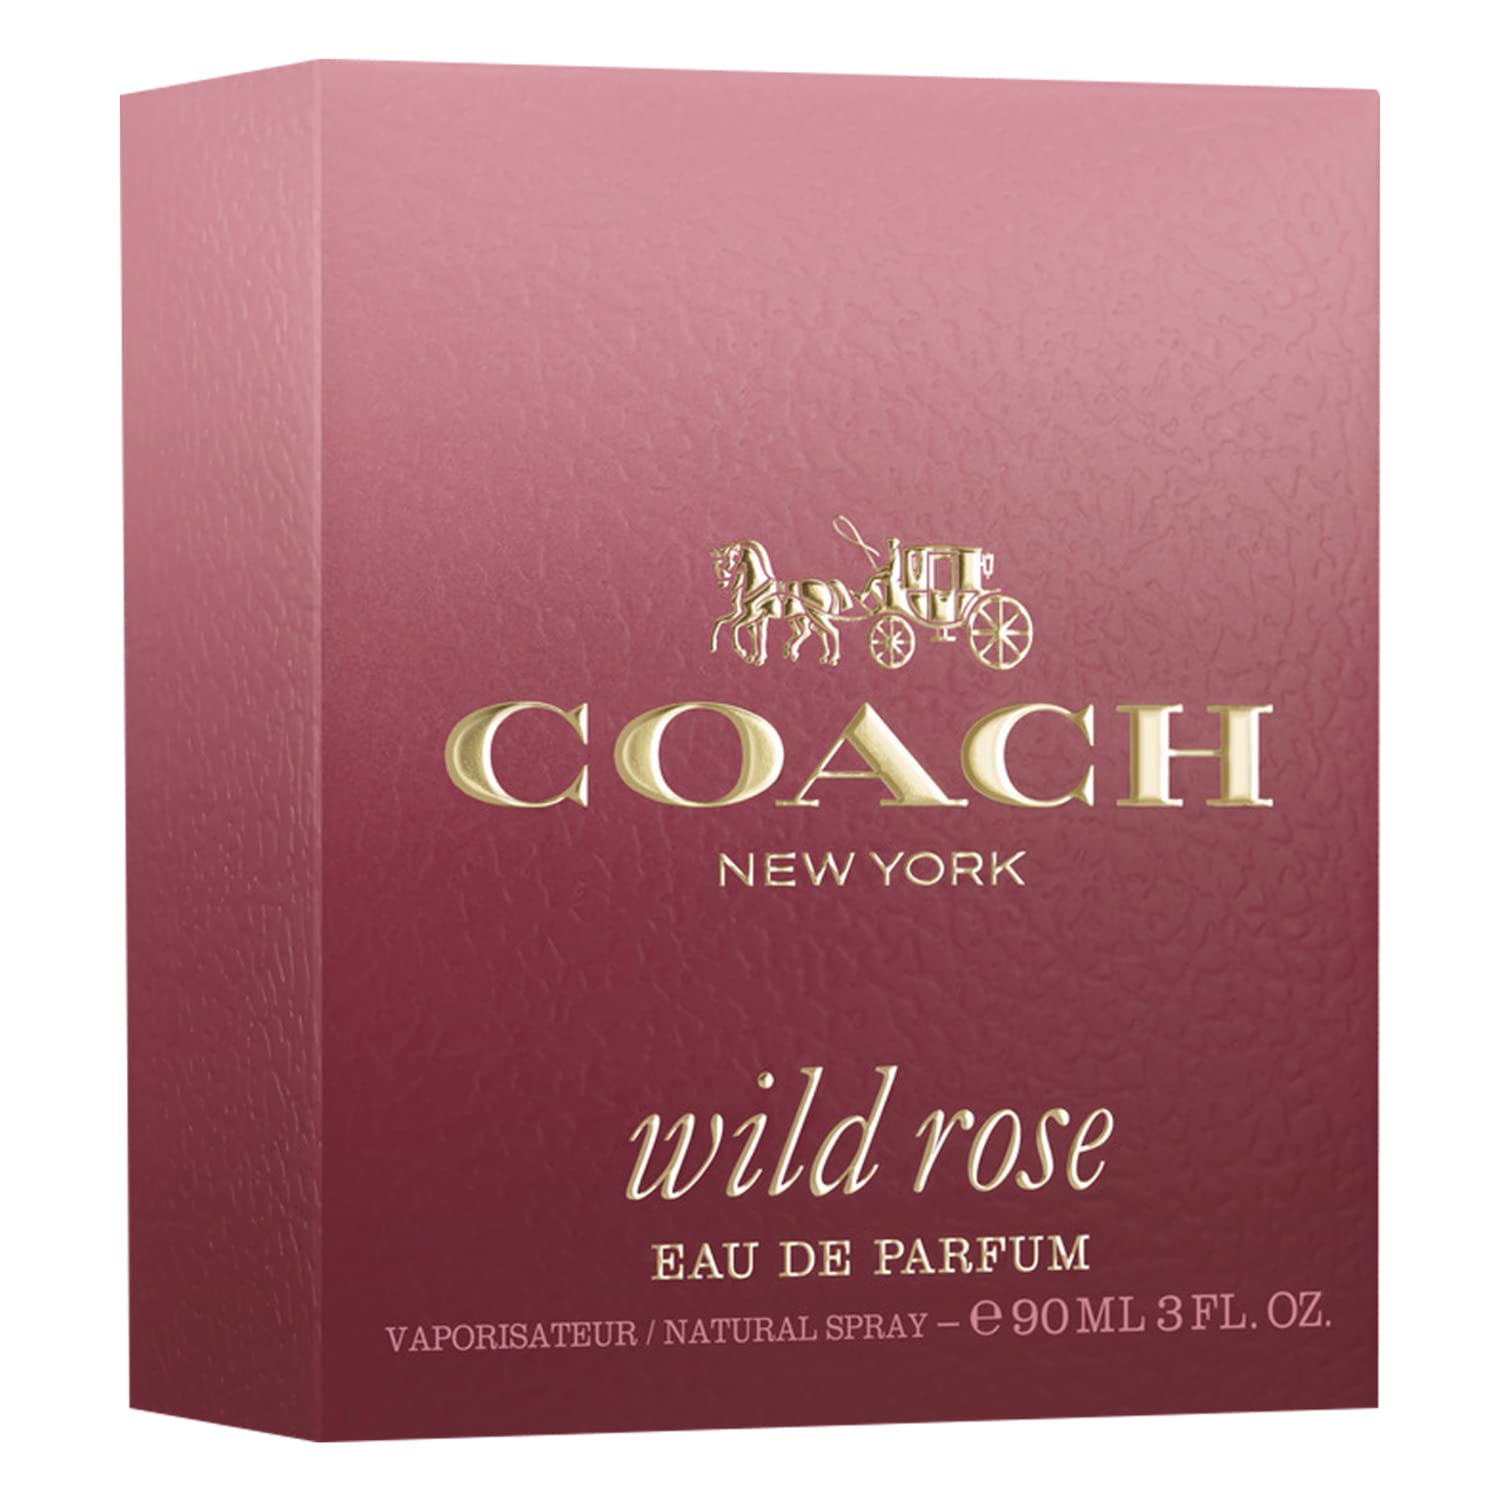 Coach Wild Rose Eau de Parfum Spray 3.0 fl. oz, 3 fl. oz.